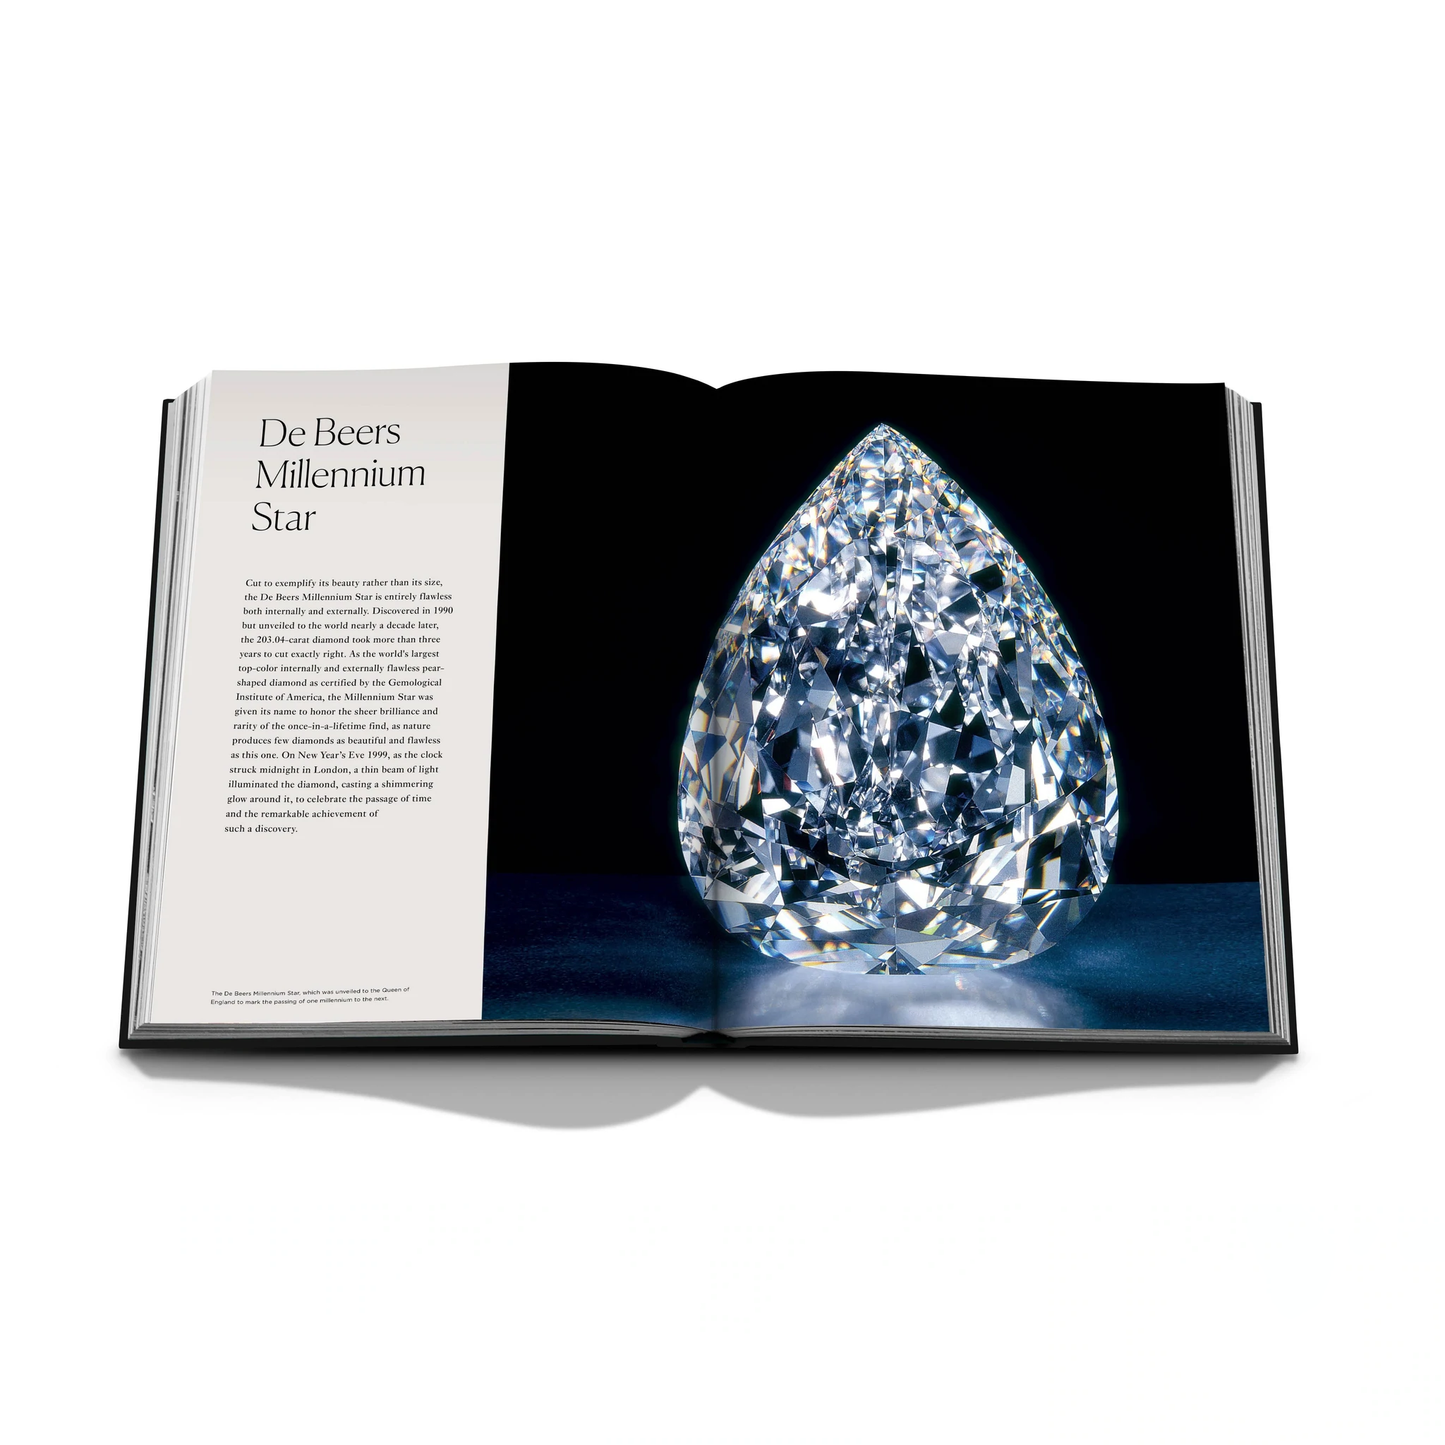 Diamonds: Diamond Stories